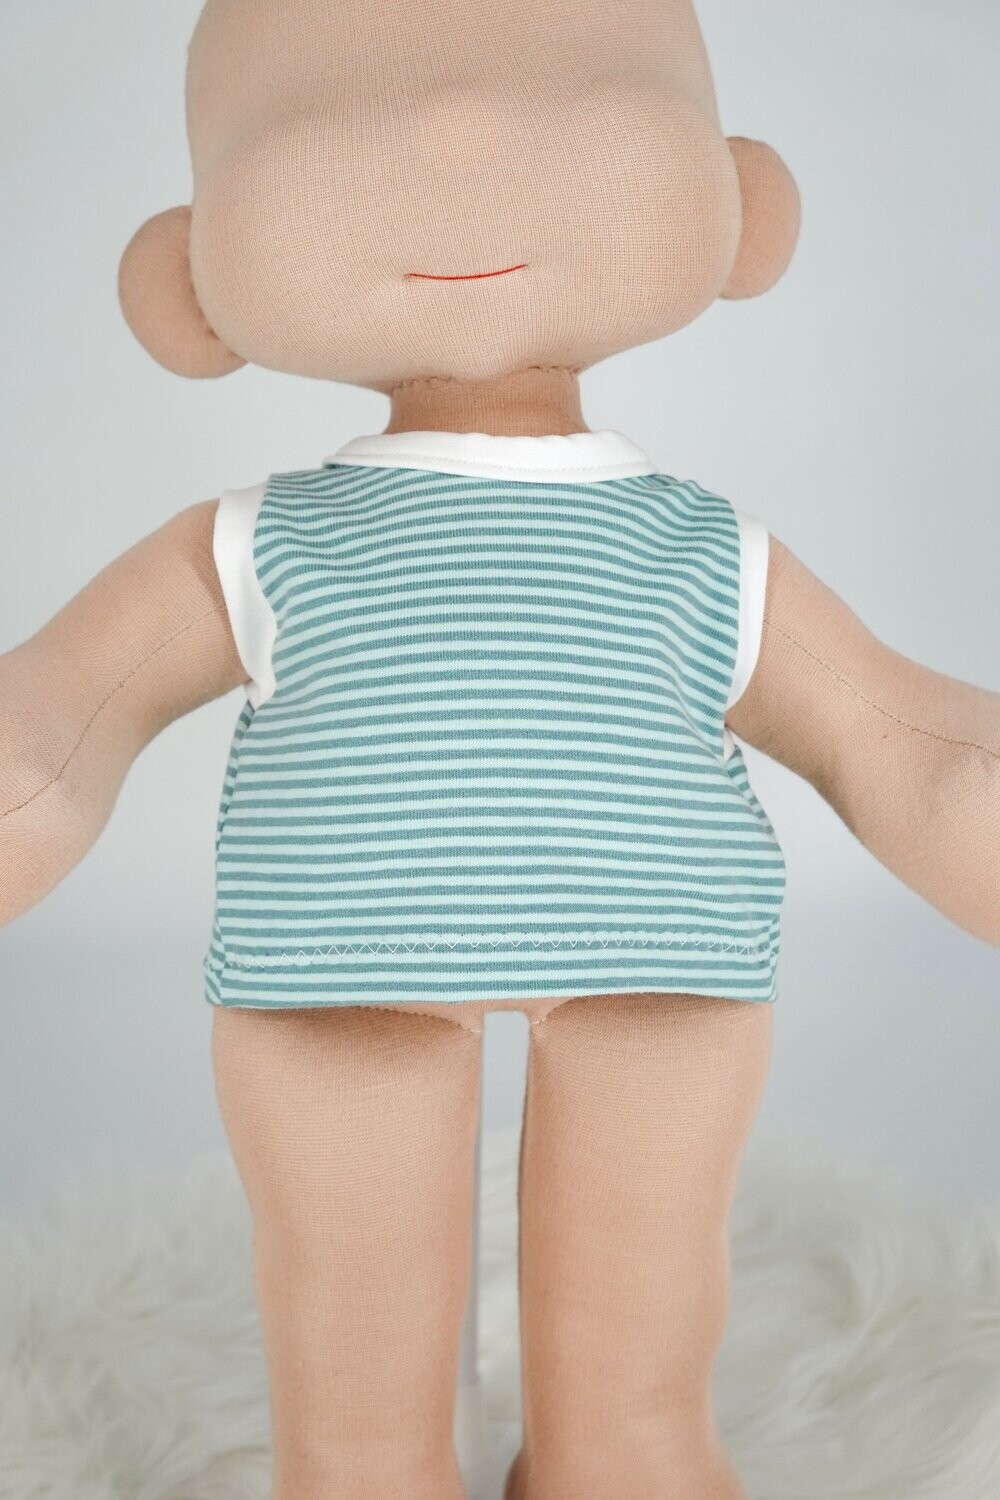 Puppen Top || azur/mint gestreift || für Puppen zwischen 40 und 50 cm